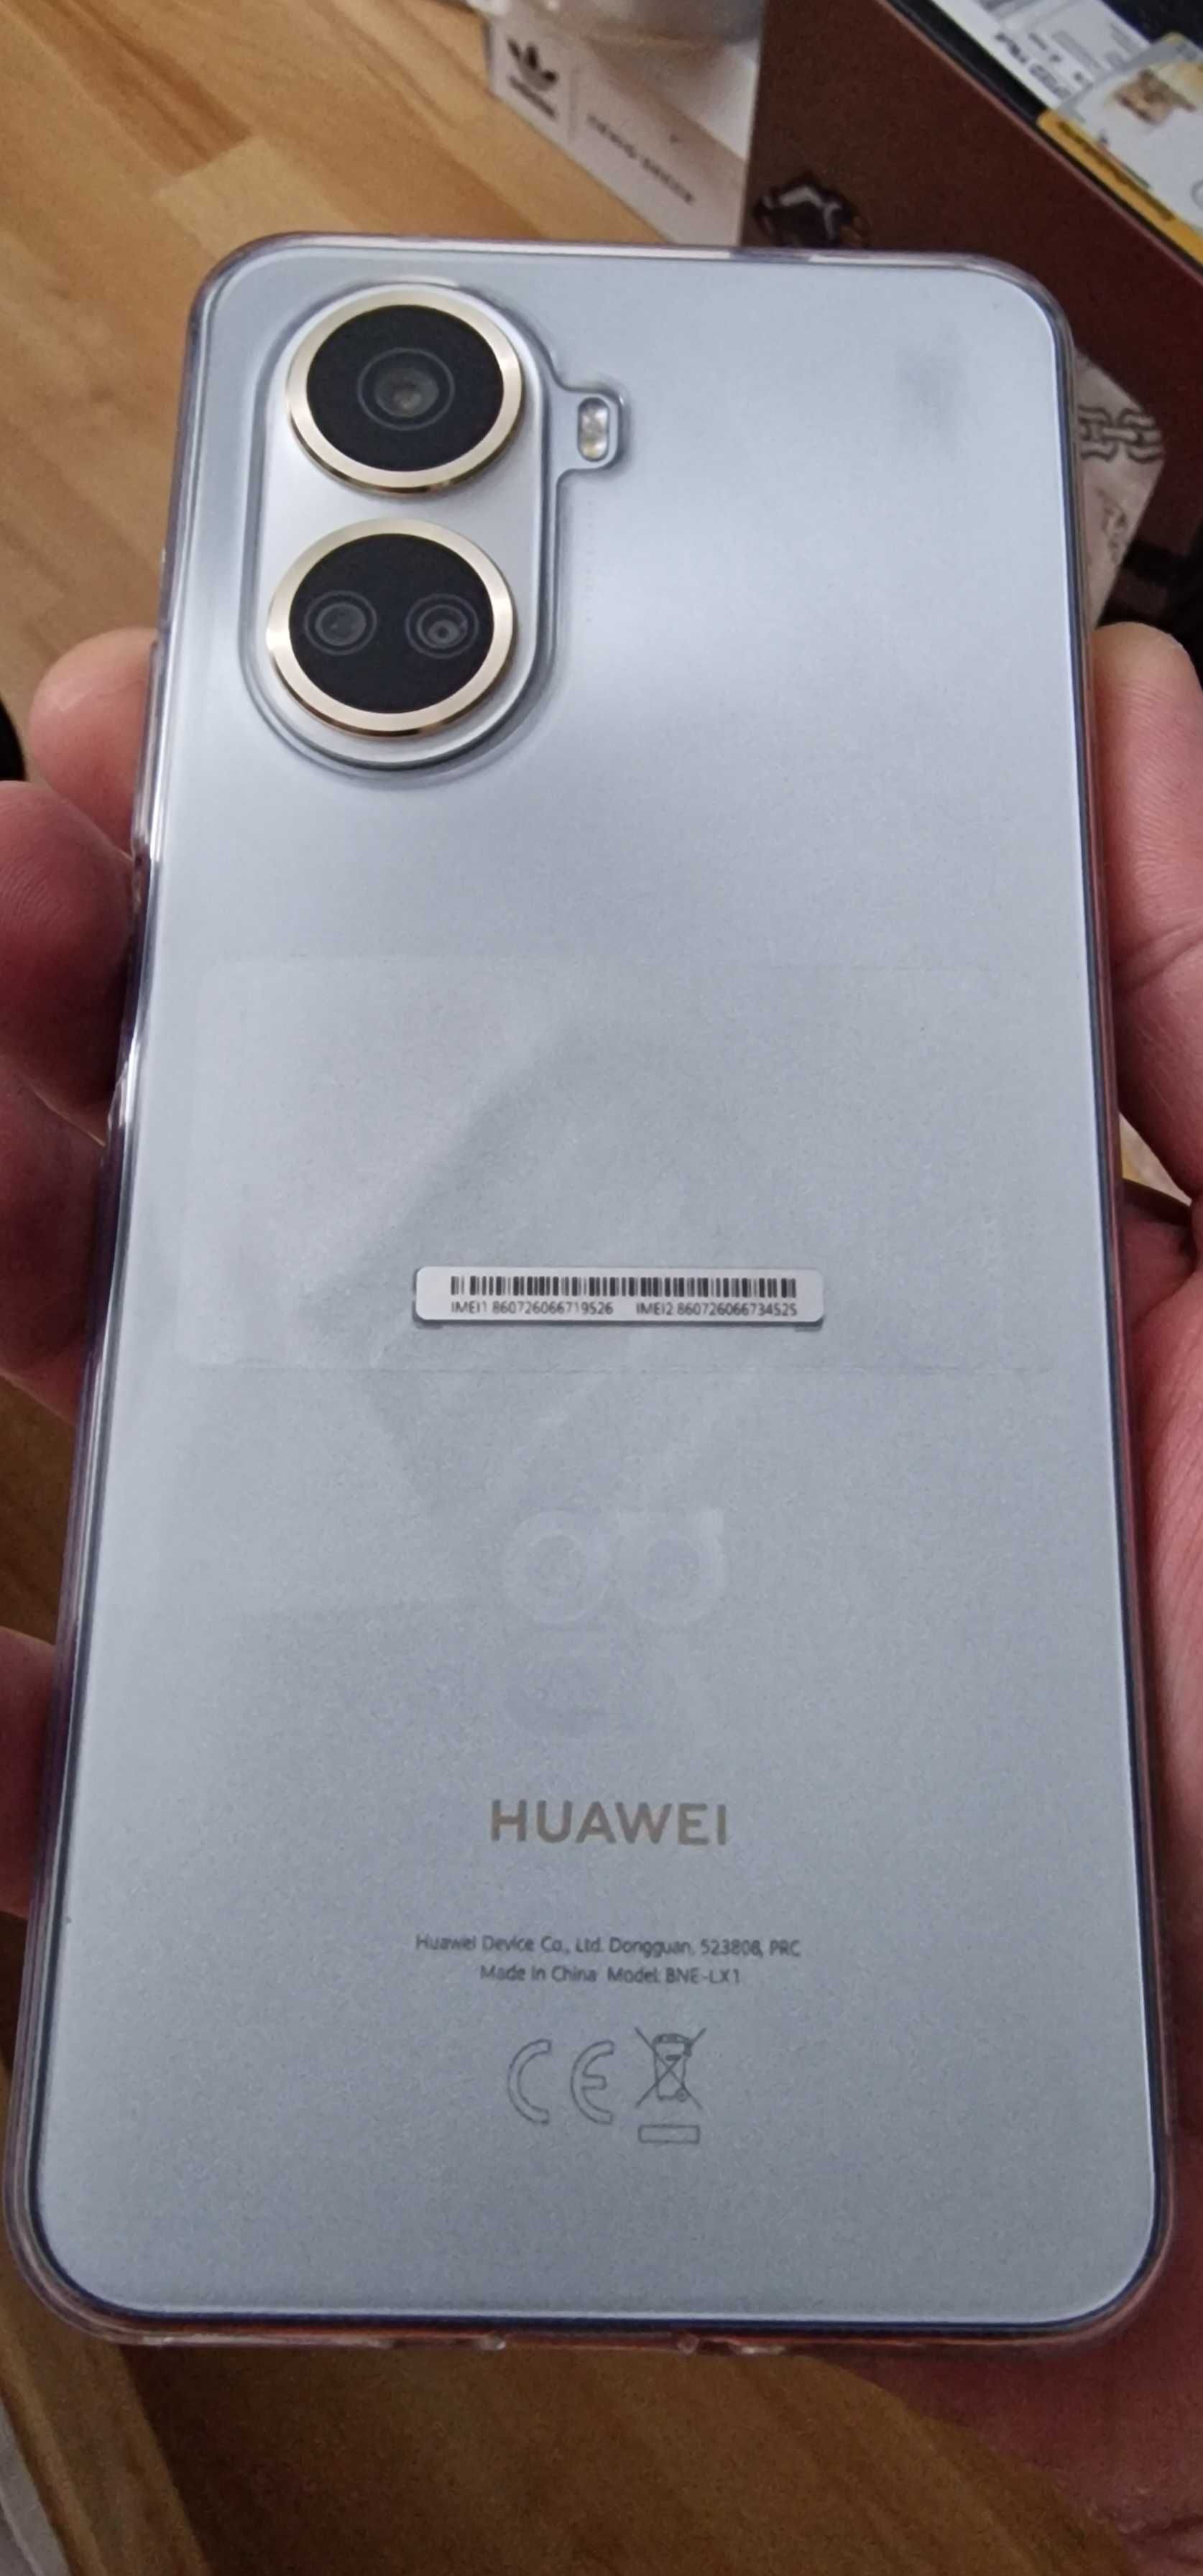 Huawei Nova 10se ca nou